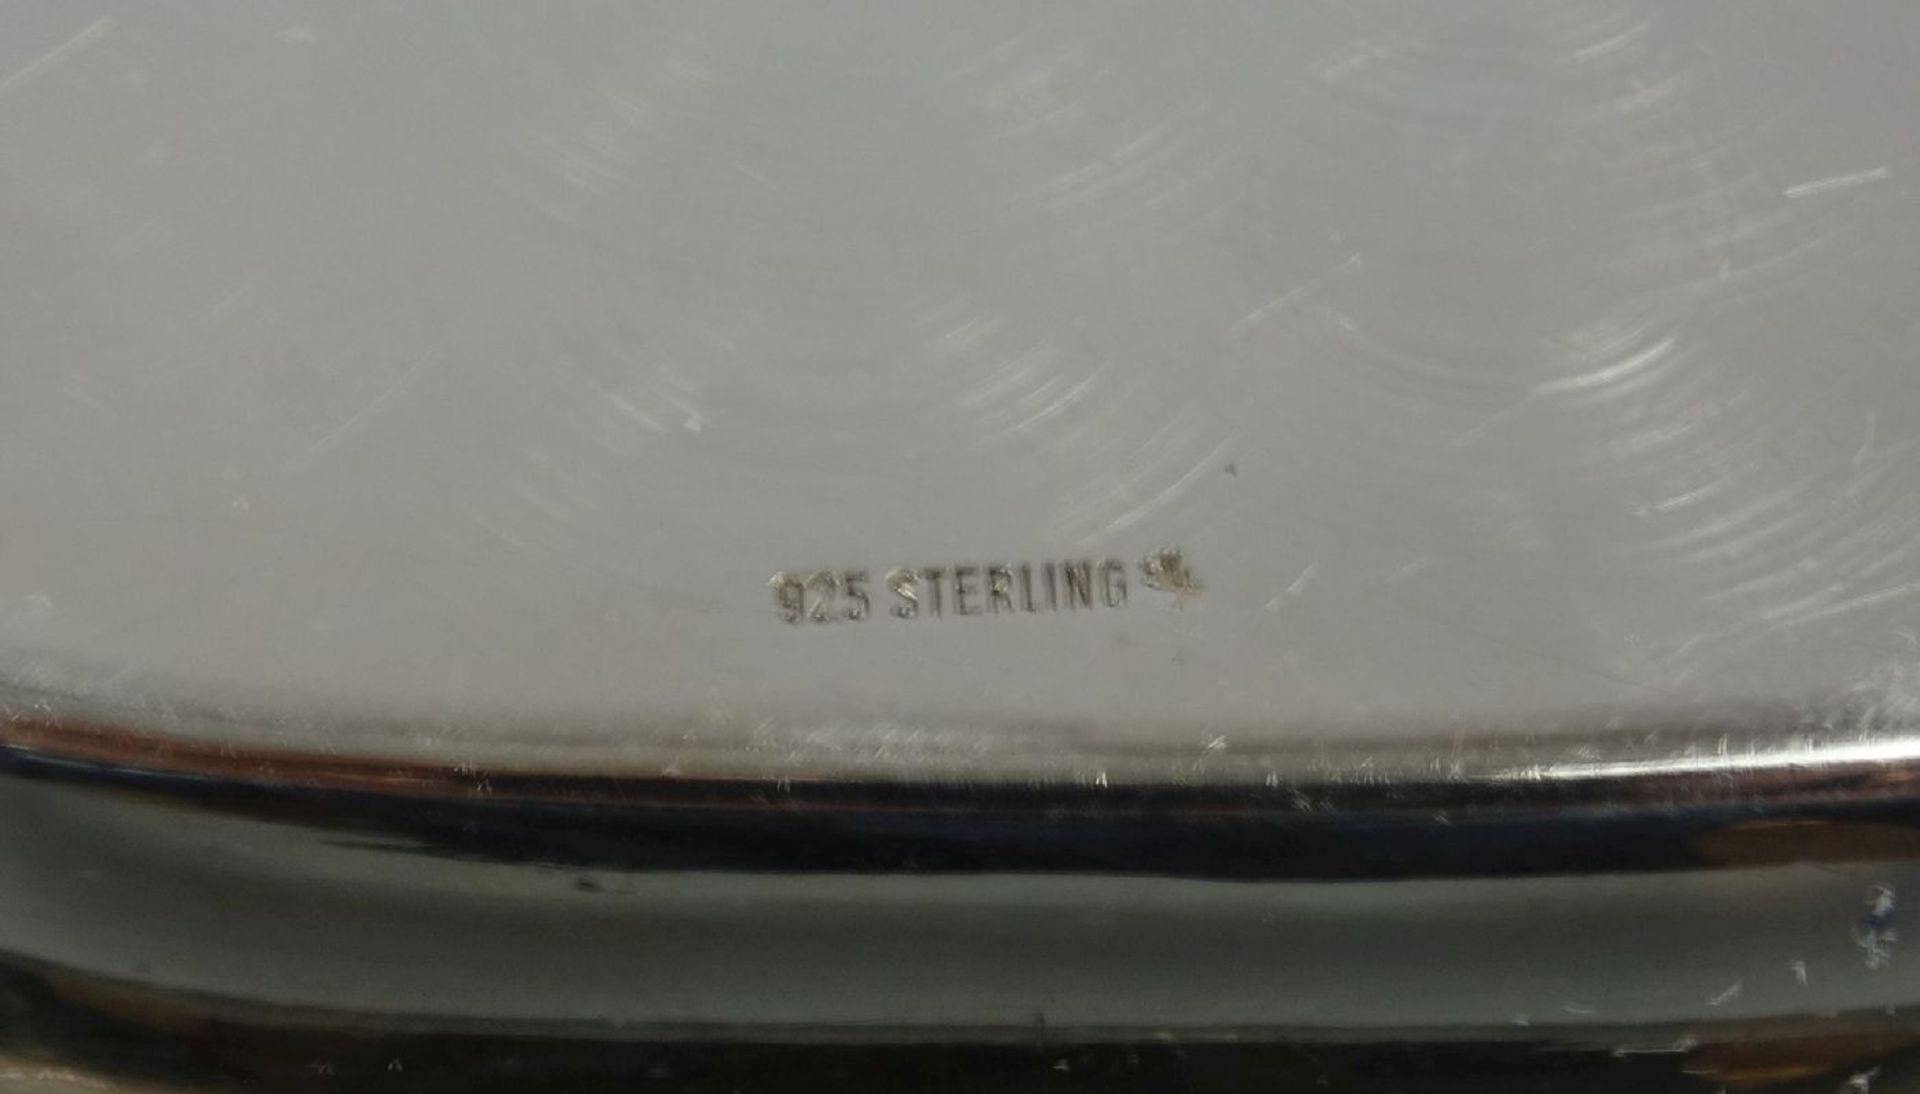 SCHALE / KARREESCHALE, 925er Silber (122 g), bezeichnet "Sterling", gepunzt mit Feingehaltsangabe - Image 2 of 3